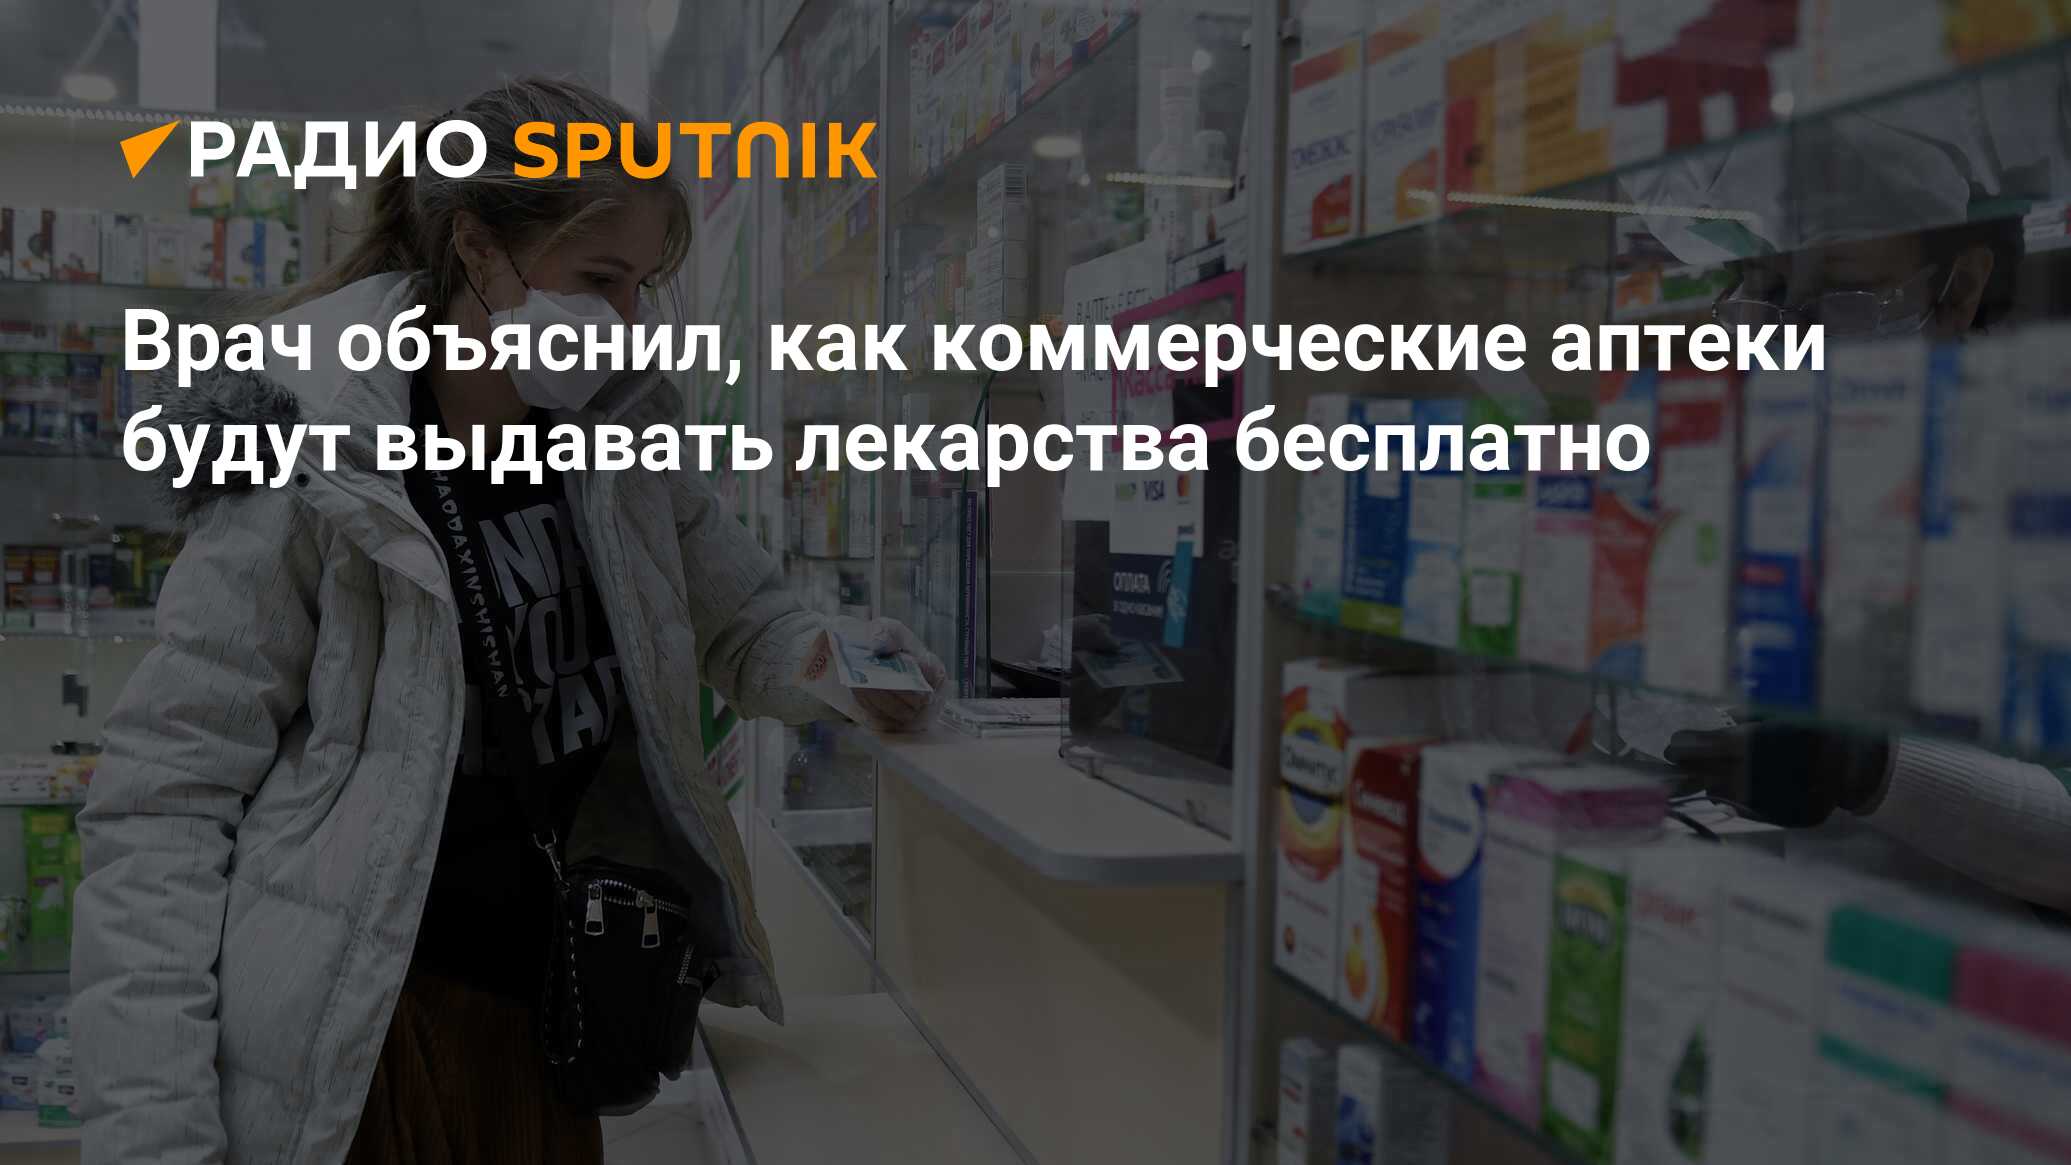 Бесплатные лекарства в аптеках спб. Из российских аптек пропали лекарства. Получение лекарств. Лекарства из списка ЖНВЛП. Повышение цен.